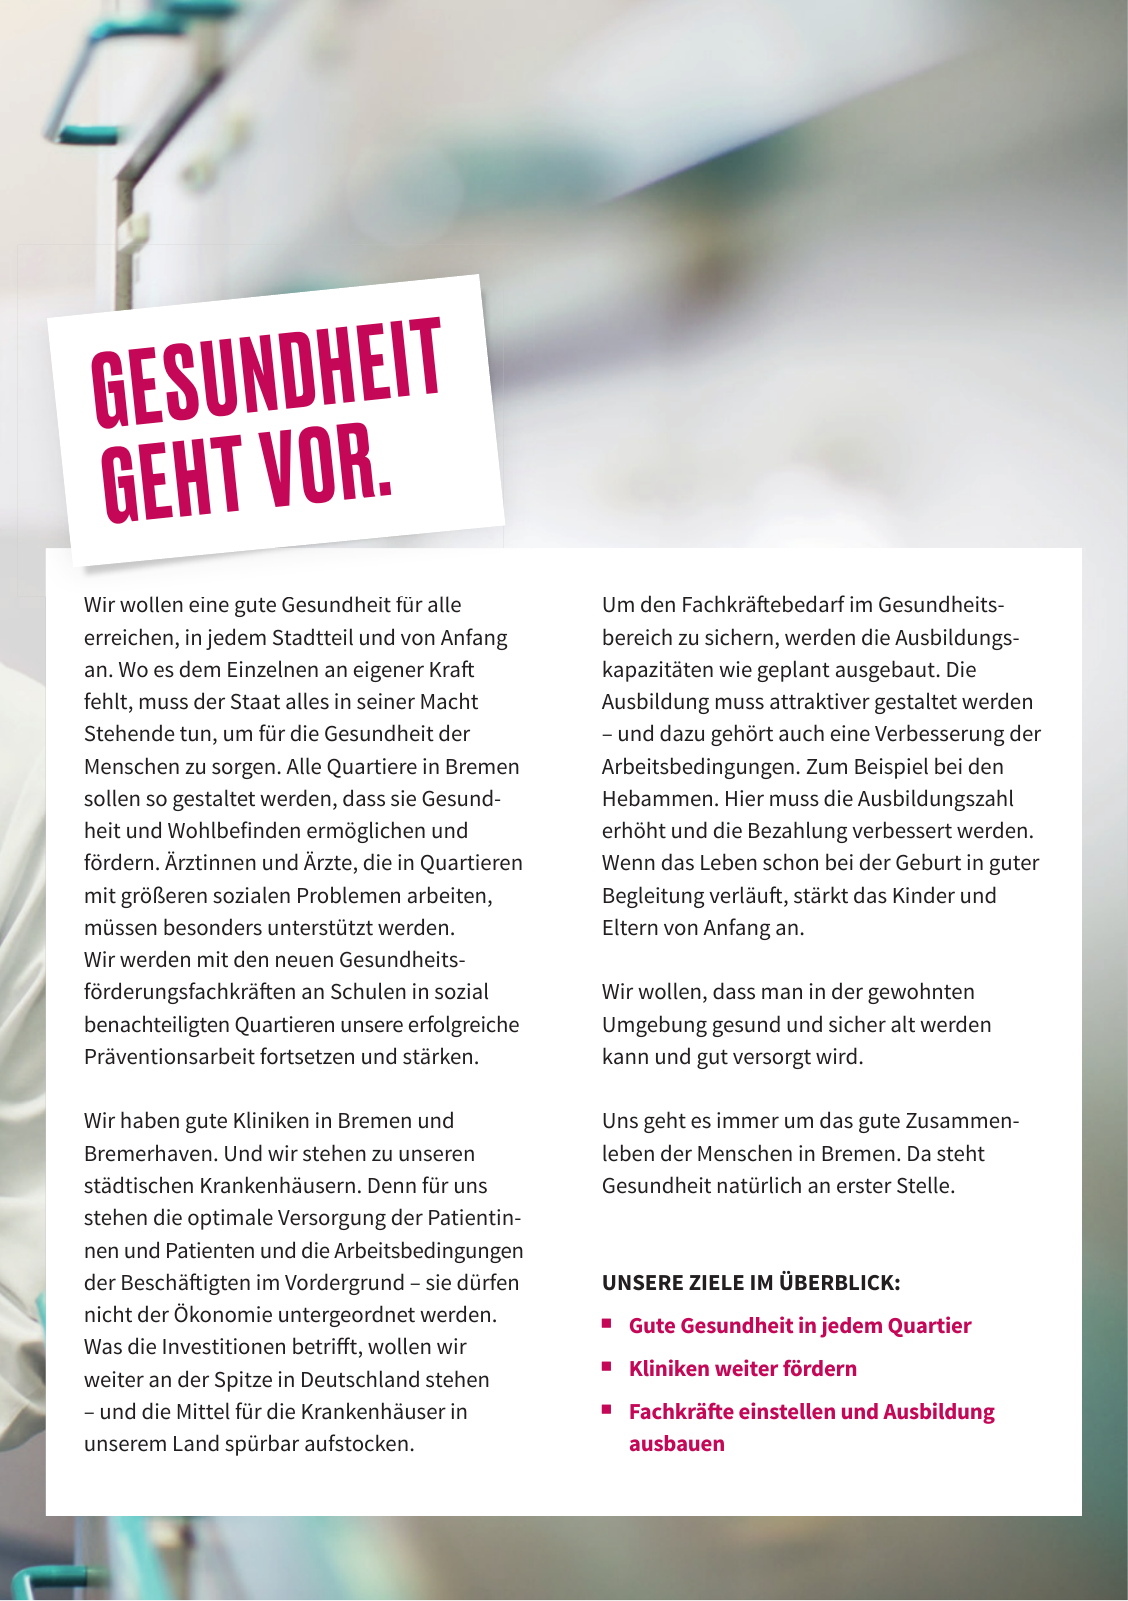 Vorschau SPD Kurzwahlprogramm - April 2019 Seite 19